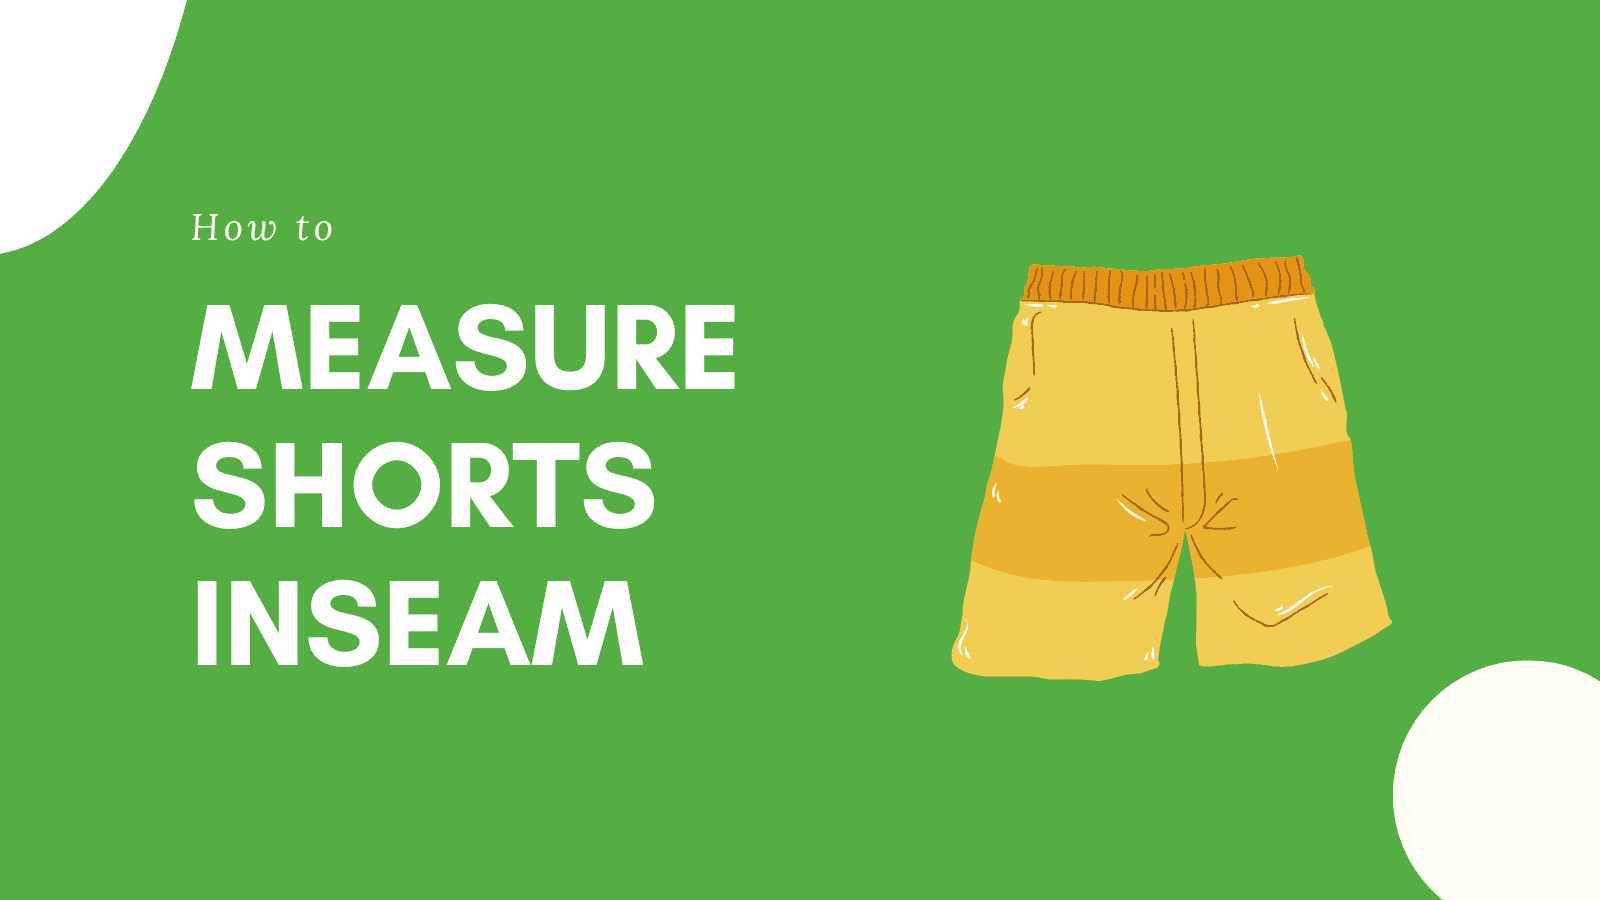 Measure Shorts inseam